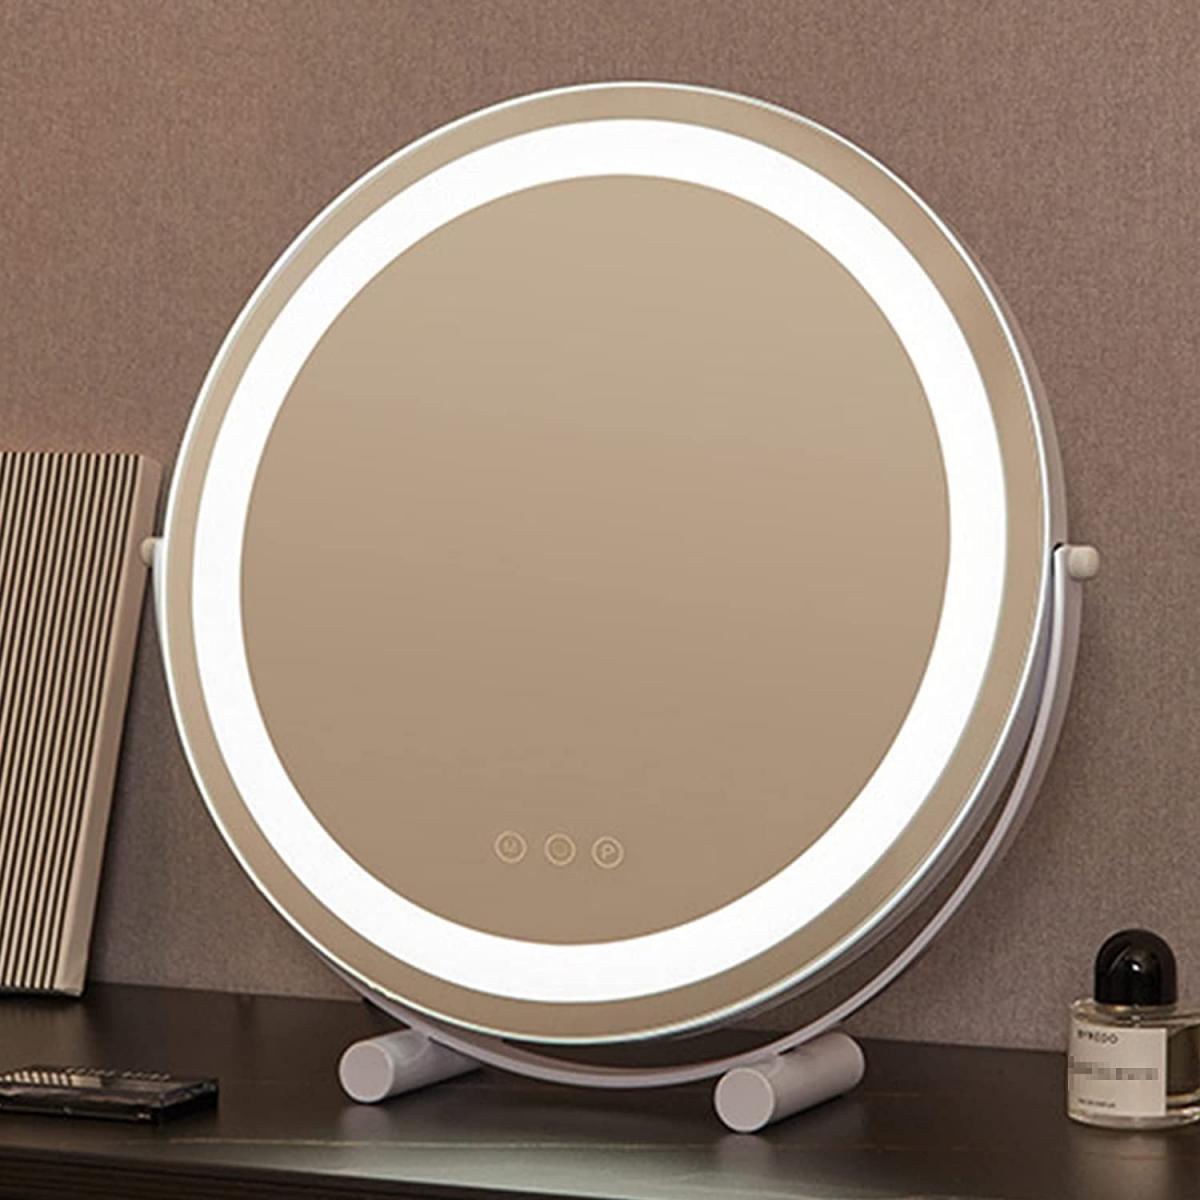 FREYARA Ovale Miroir Maquillage pour Coiffeuse avec LED Bande, 40*50cm  Grand, Toucher Intelligent, 360° Rotation, 3 Couleurs Mode, Luminosité  Réglable, EU Plug, Doré